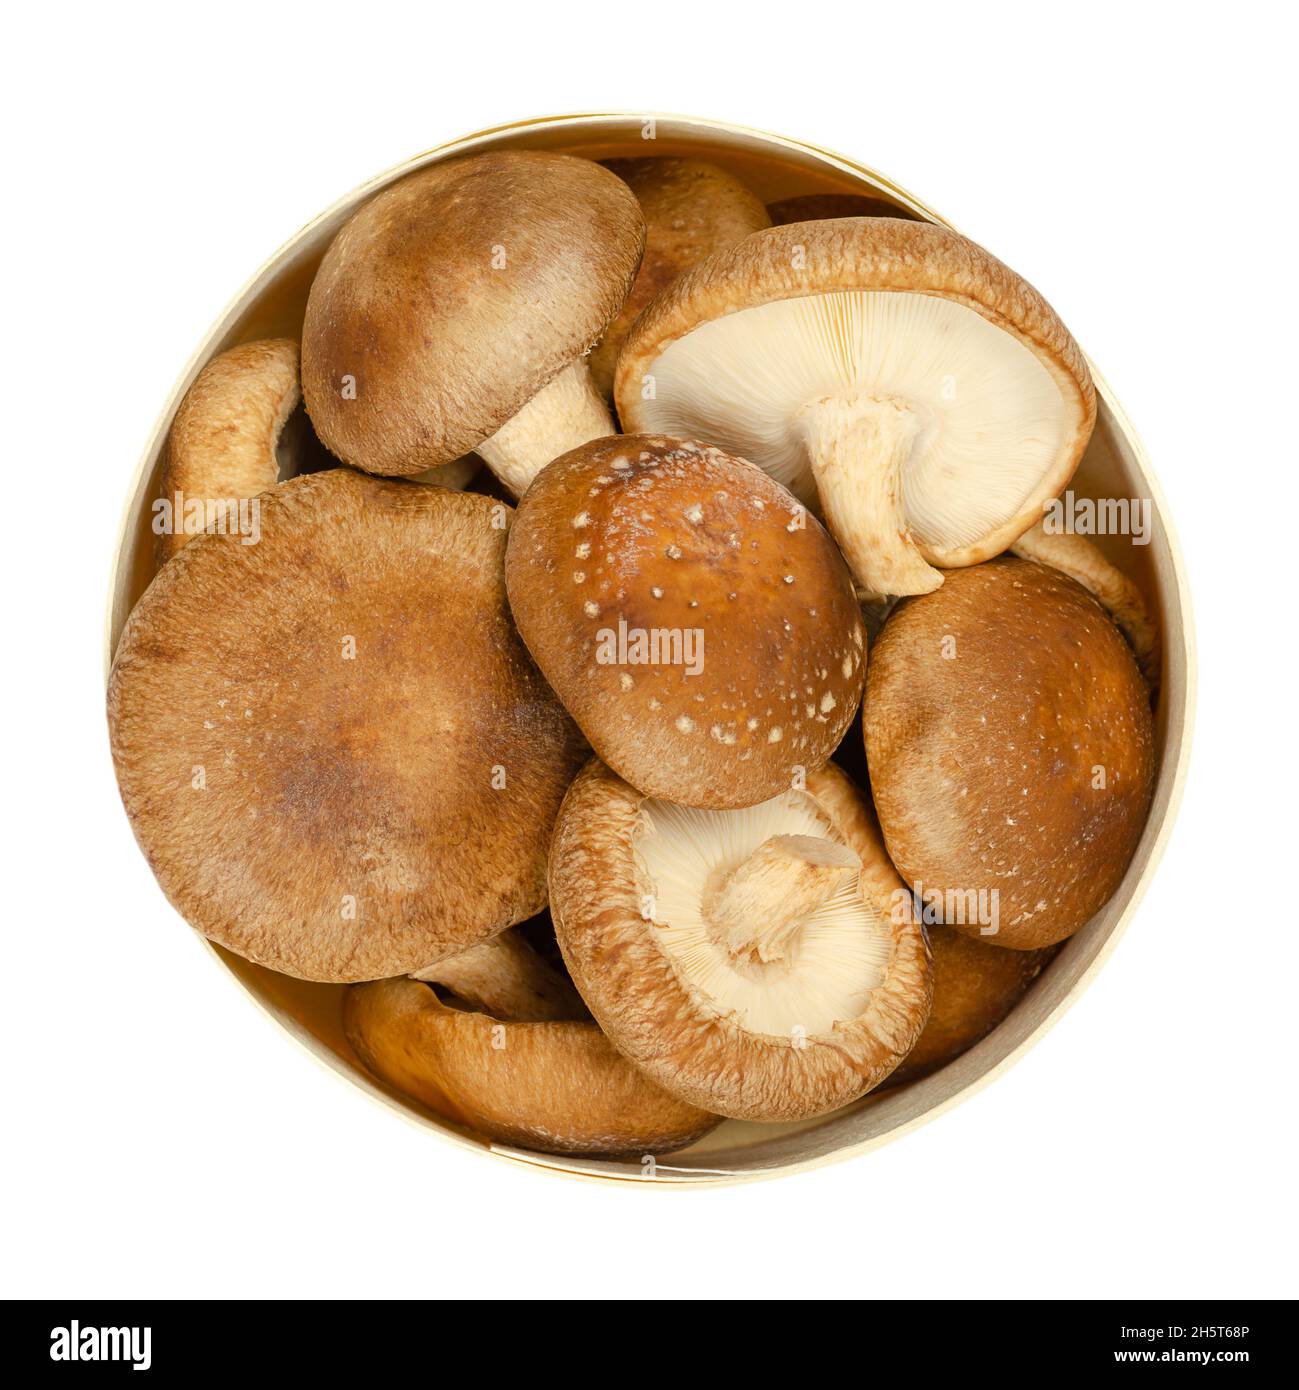 Champignons shiitake frais, dans une boîte ronde en bois de balsa.Lentinula edodes, champignons comestibles, originaires d'Asie de l'est, également utilisés en médecine traditionnelle. Banque D'Images